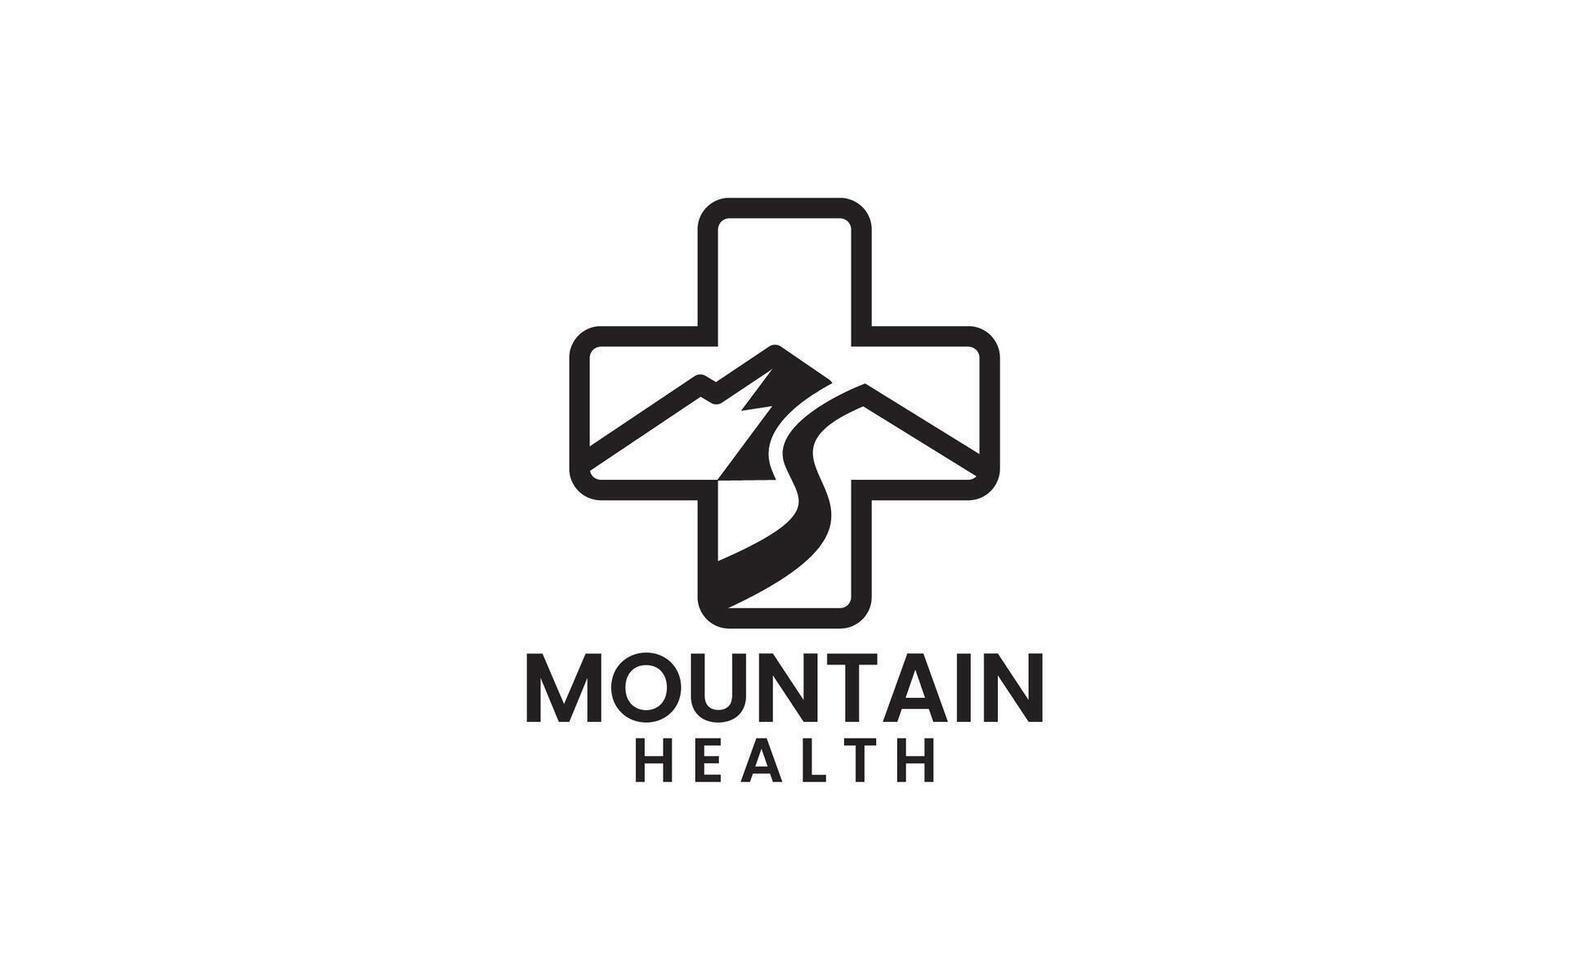 Medical cross mountain outdoor logo design vector